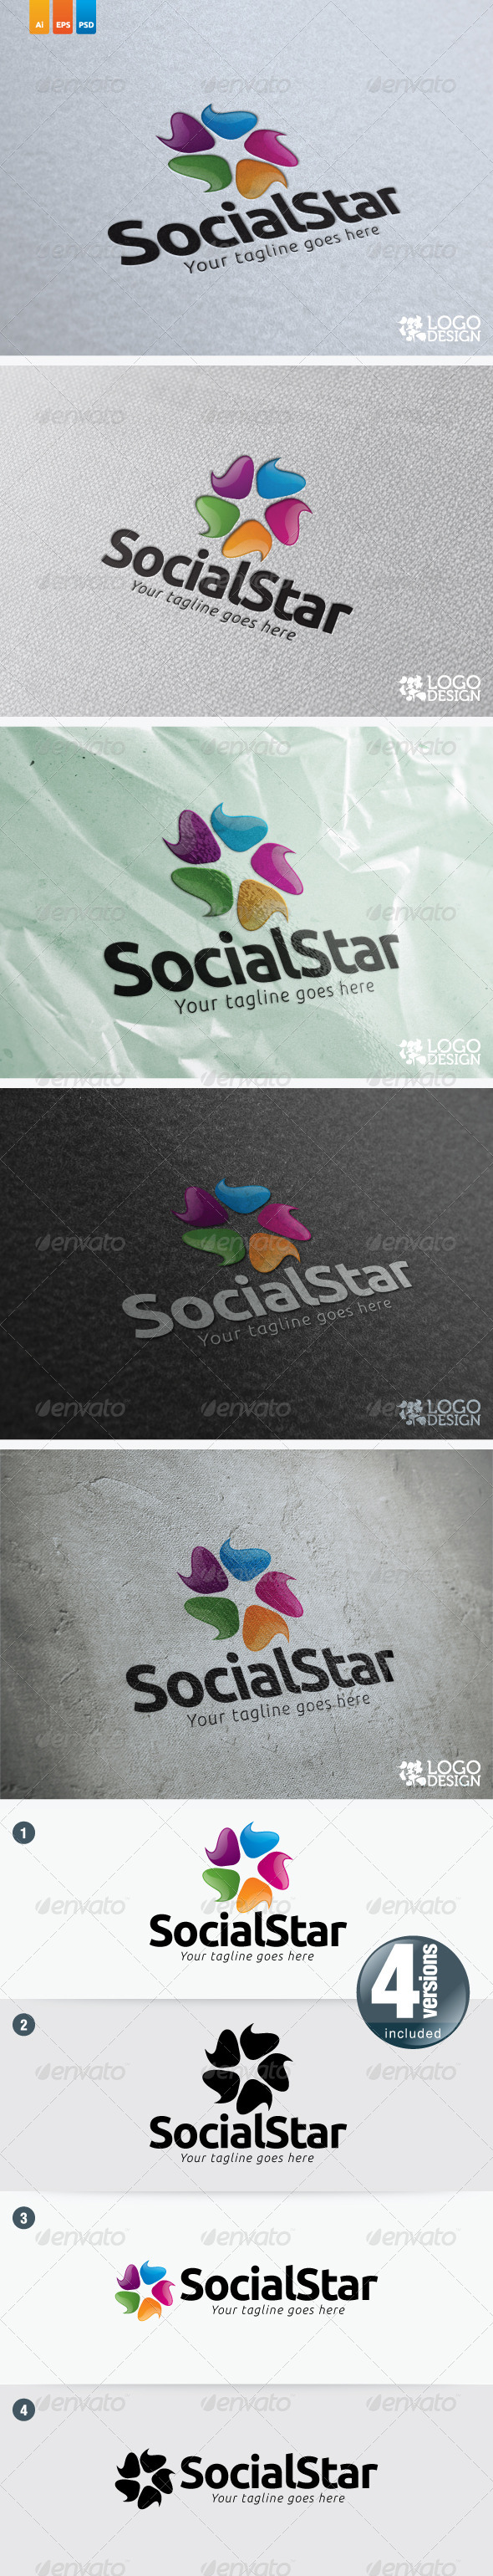 Social Star